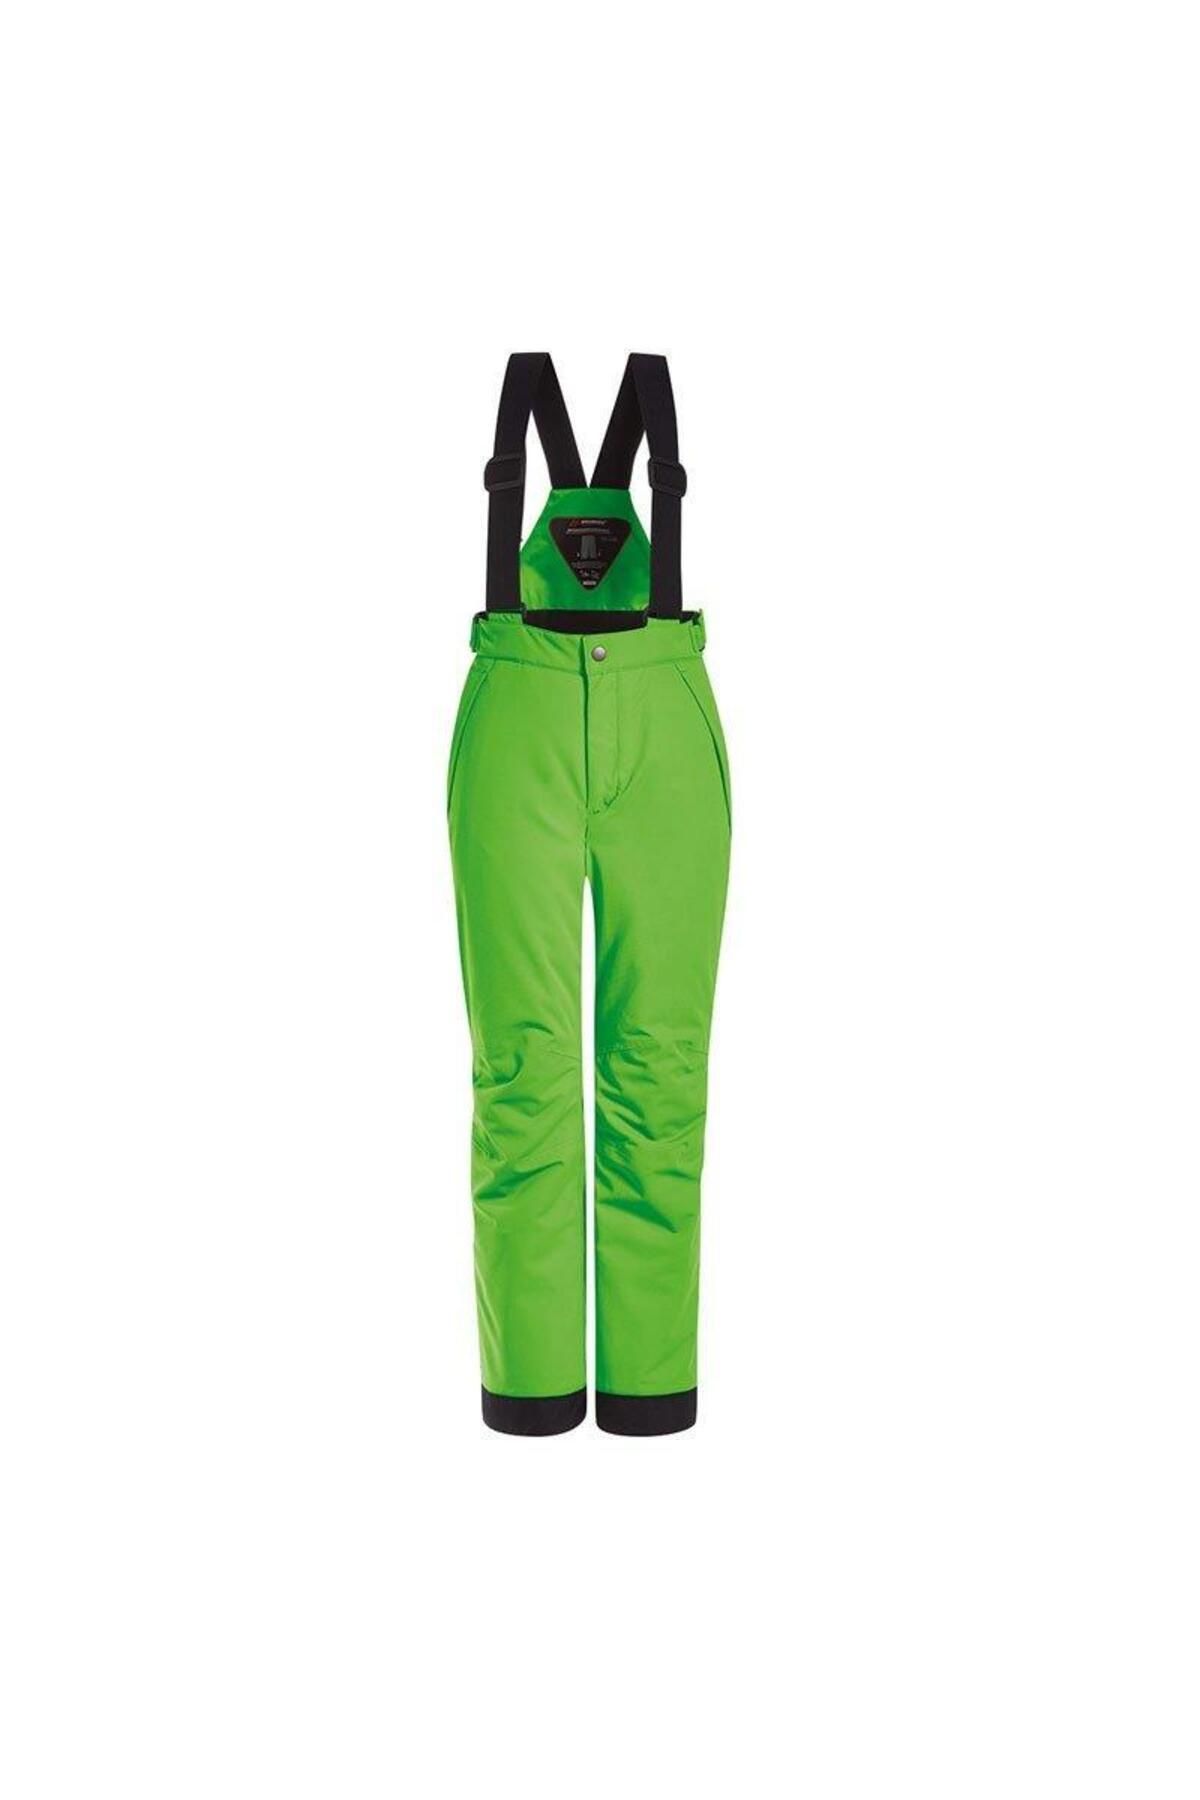 Maier Maxi Çocuk Kayak Pantolonu Yeşil-ma300002